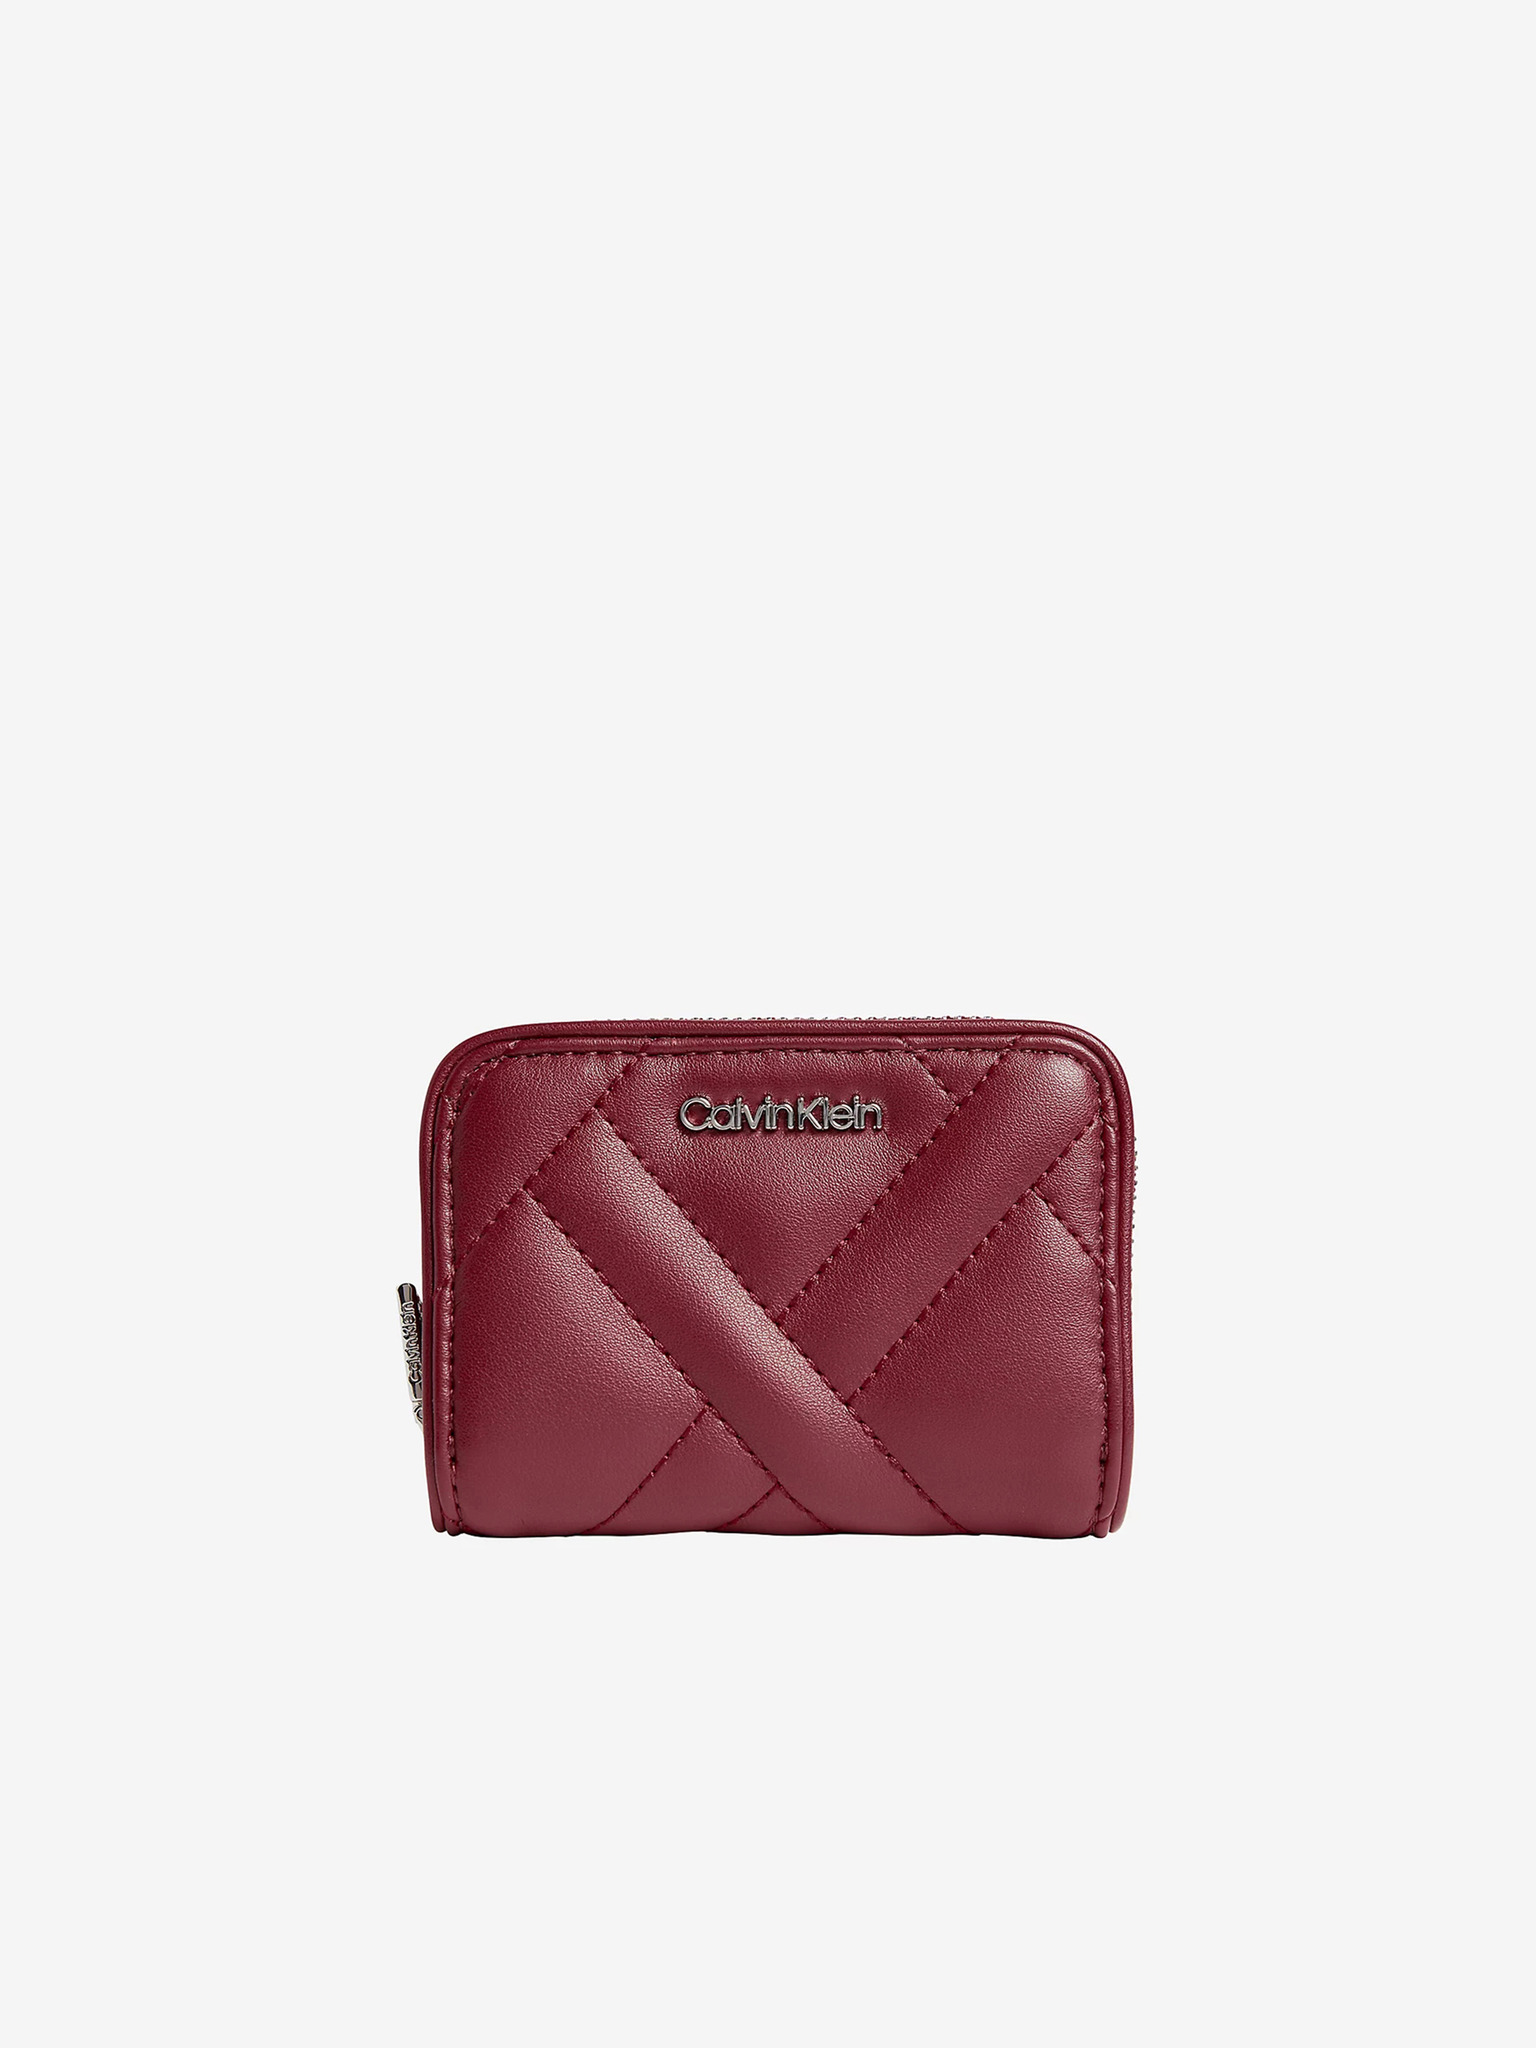 Calvin Klein Hayden Wristlet Pouch - Almond/Luggage | Catch.com.au